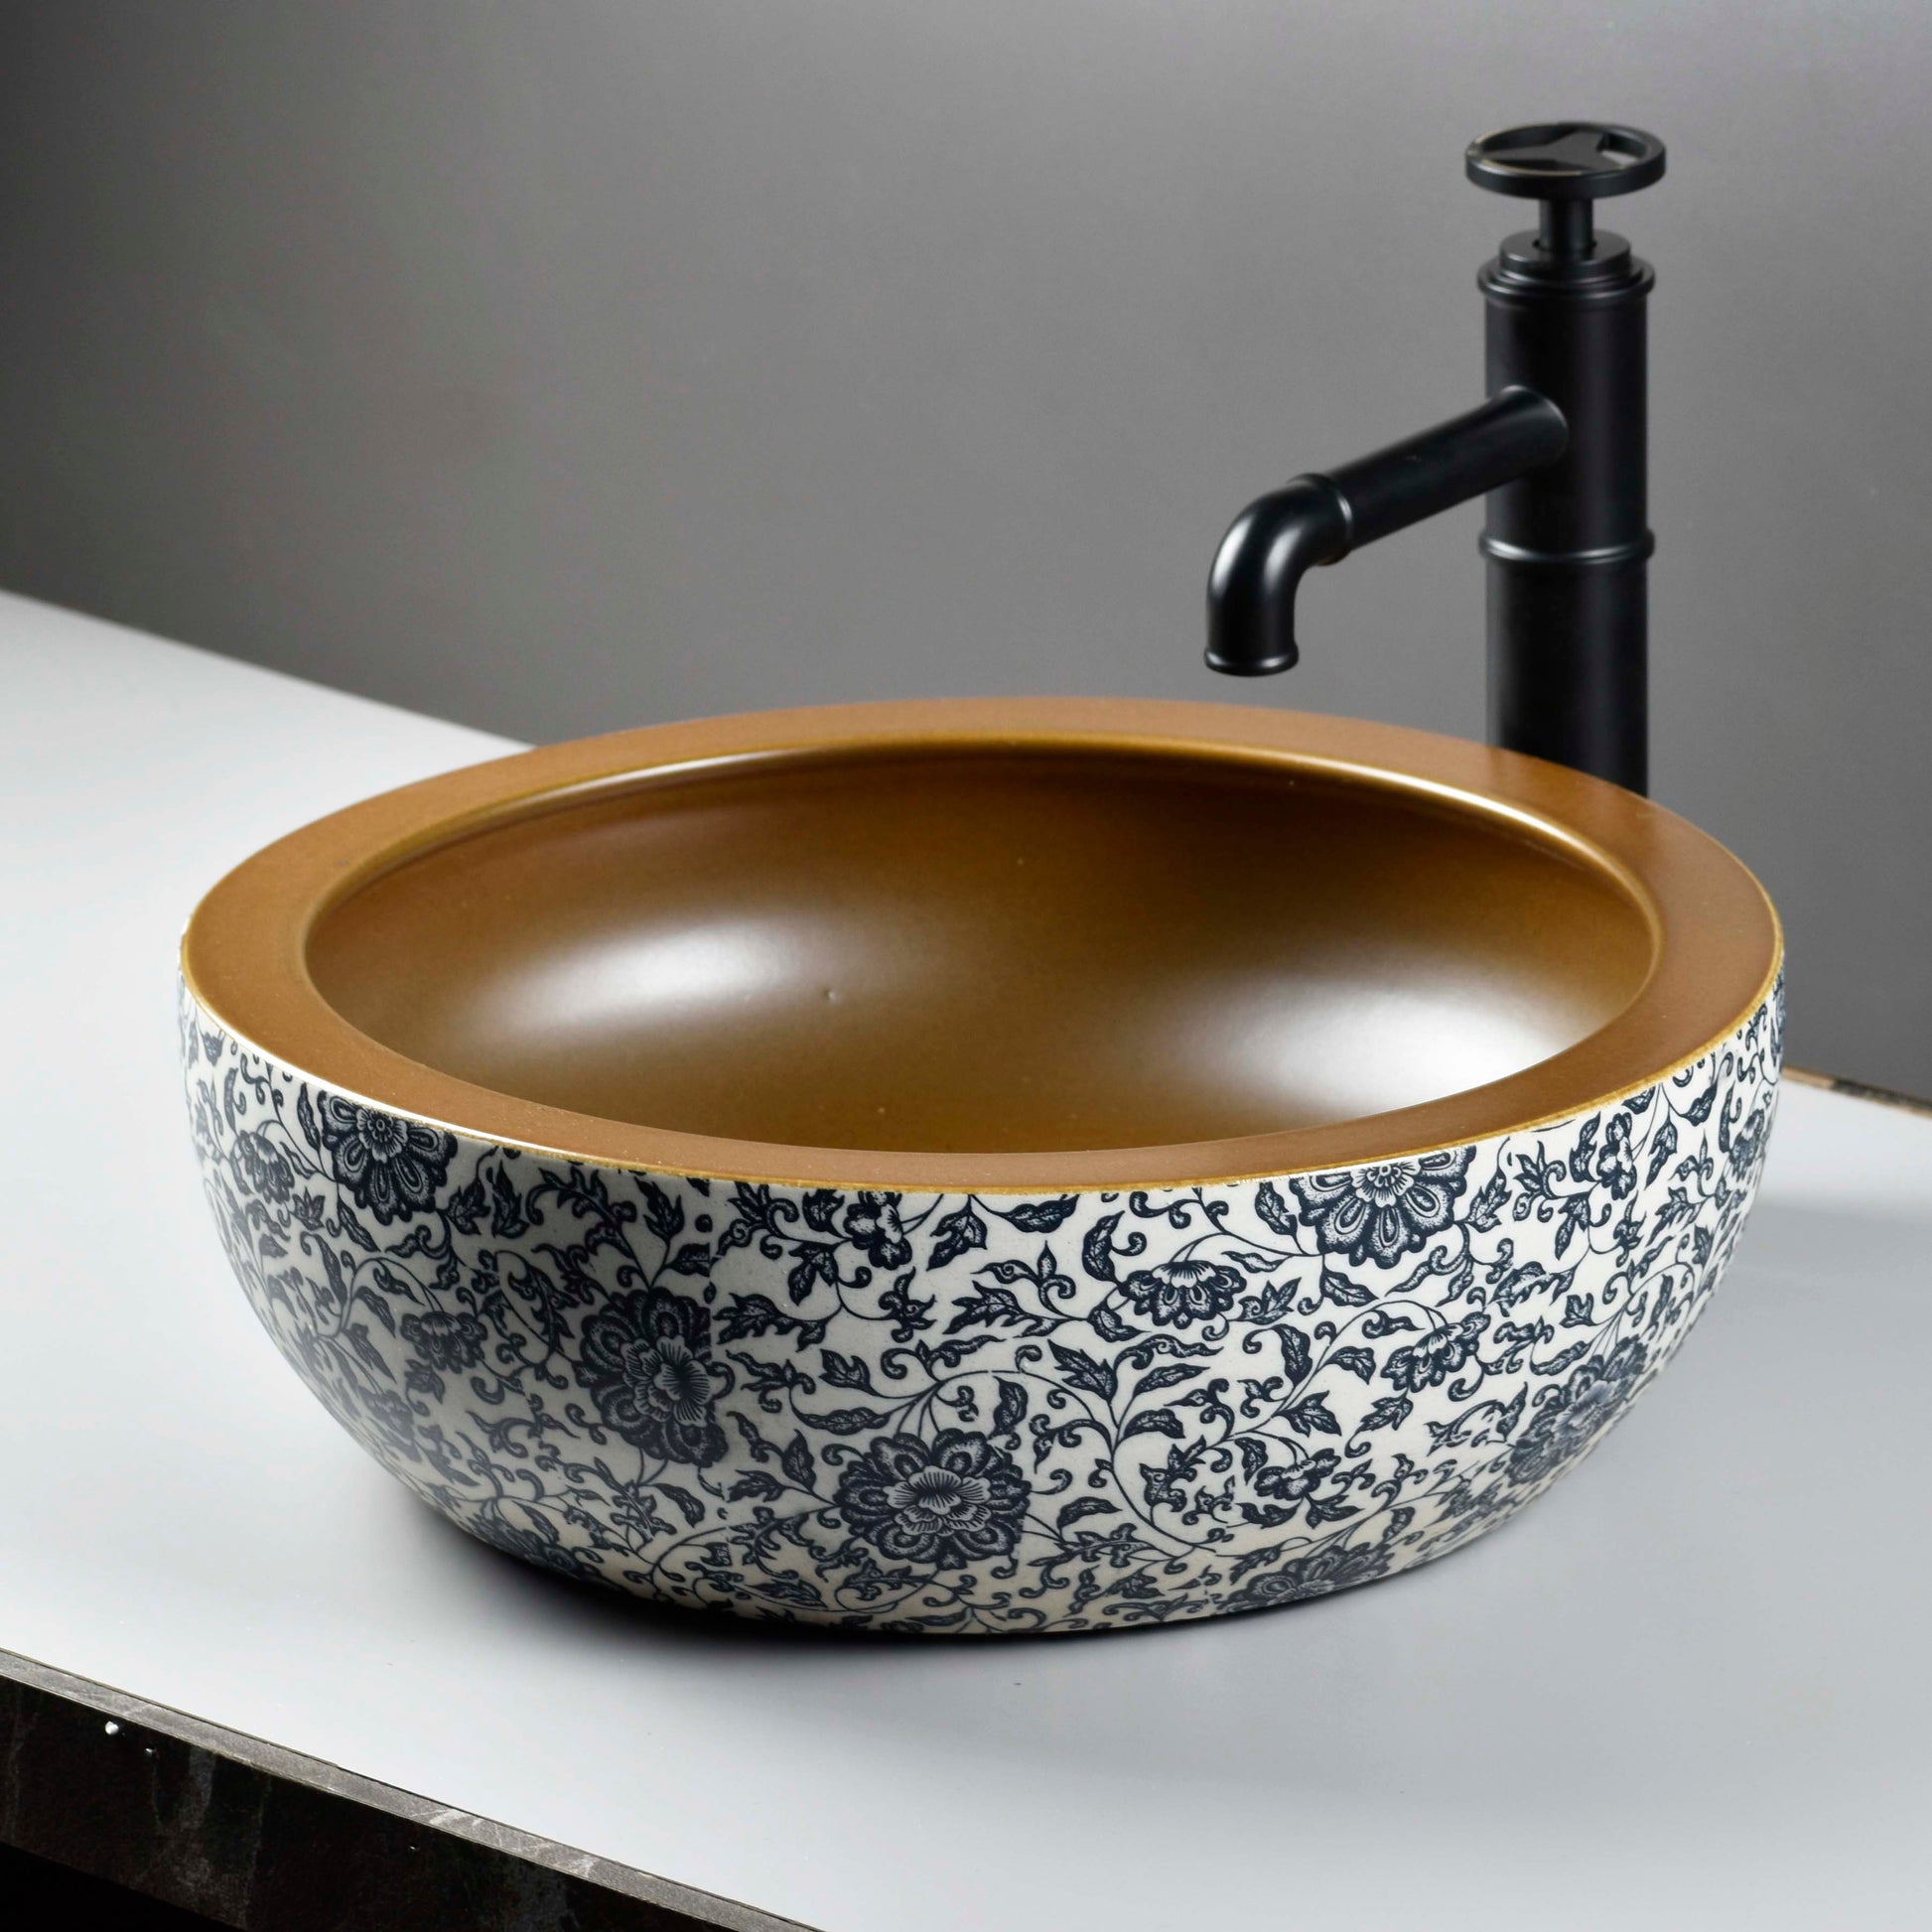 InArt Ceramic Wash Basin | Moroccan Design | Multicolor | 16x16x6 Inches | Tabletop Model - InArt-Studio